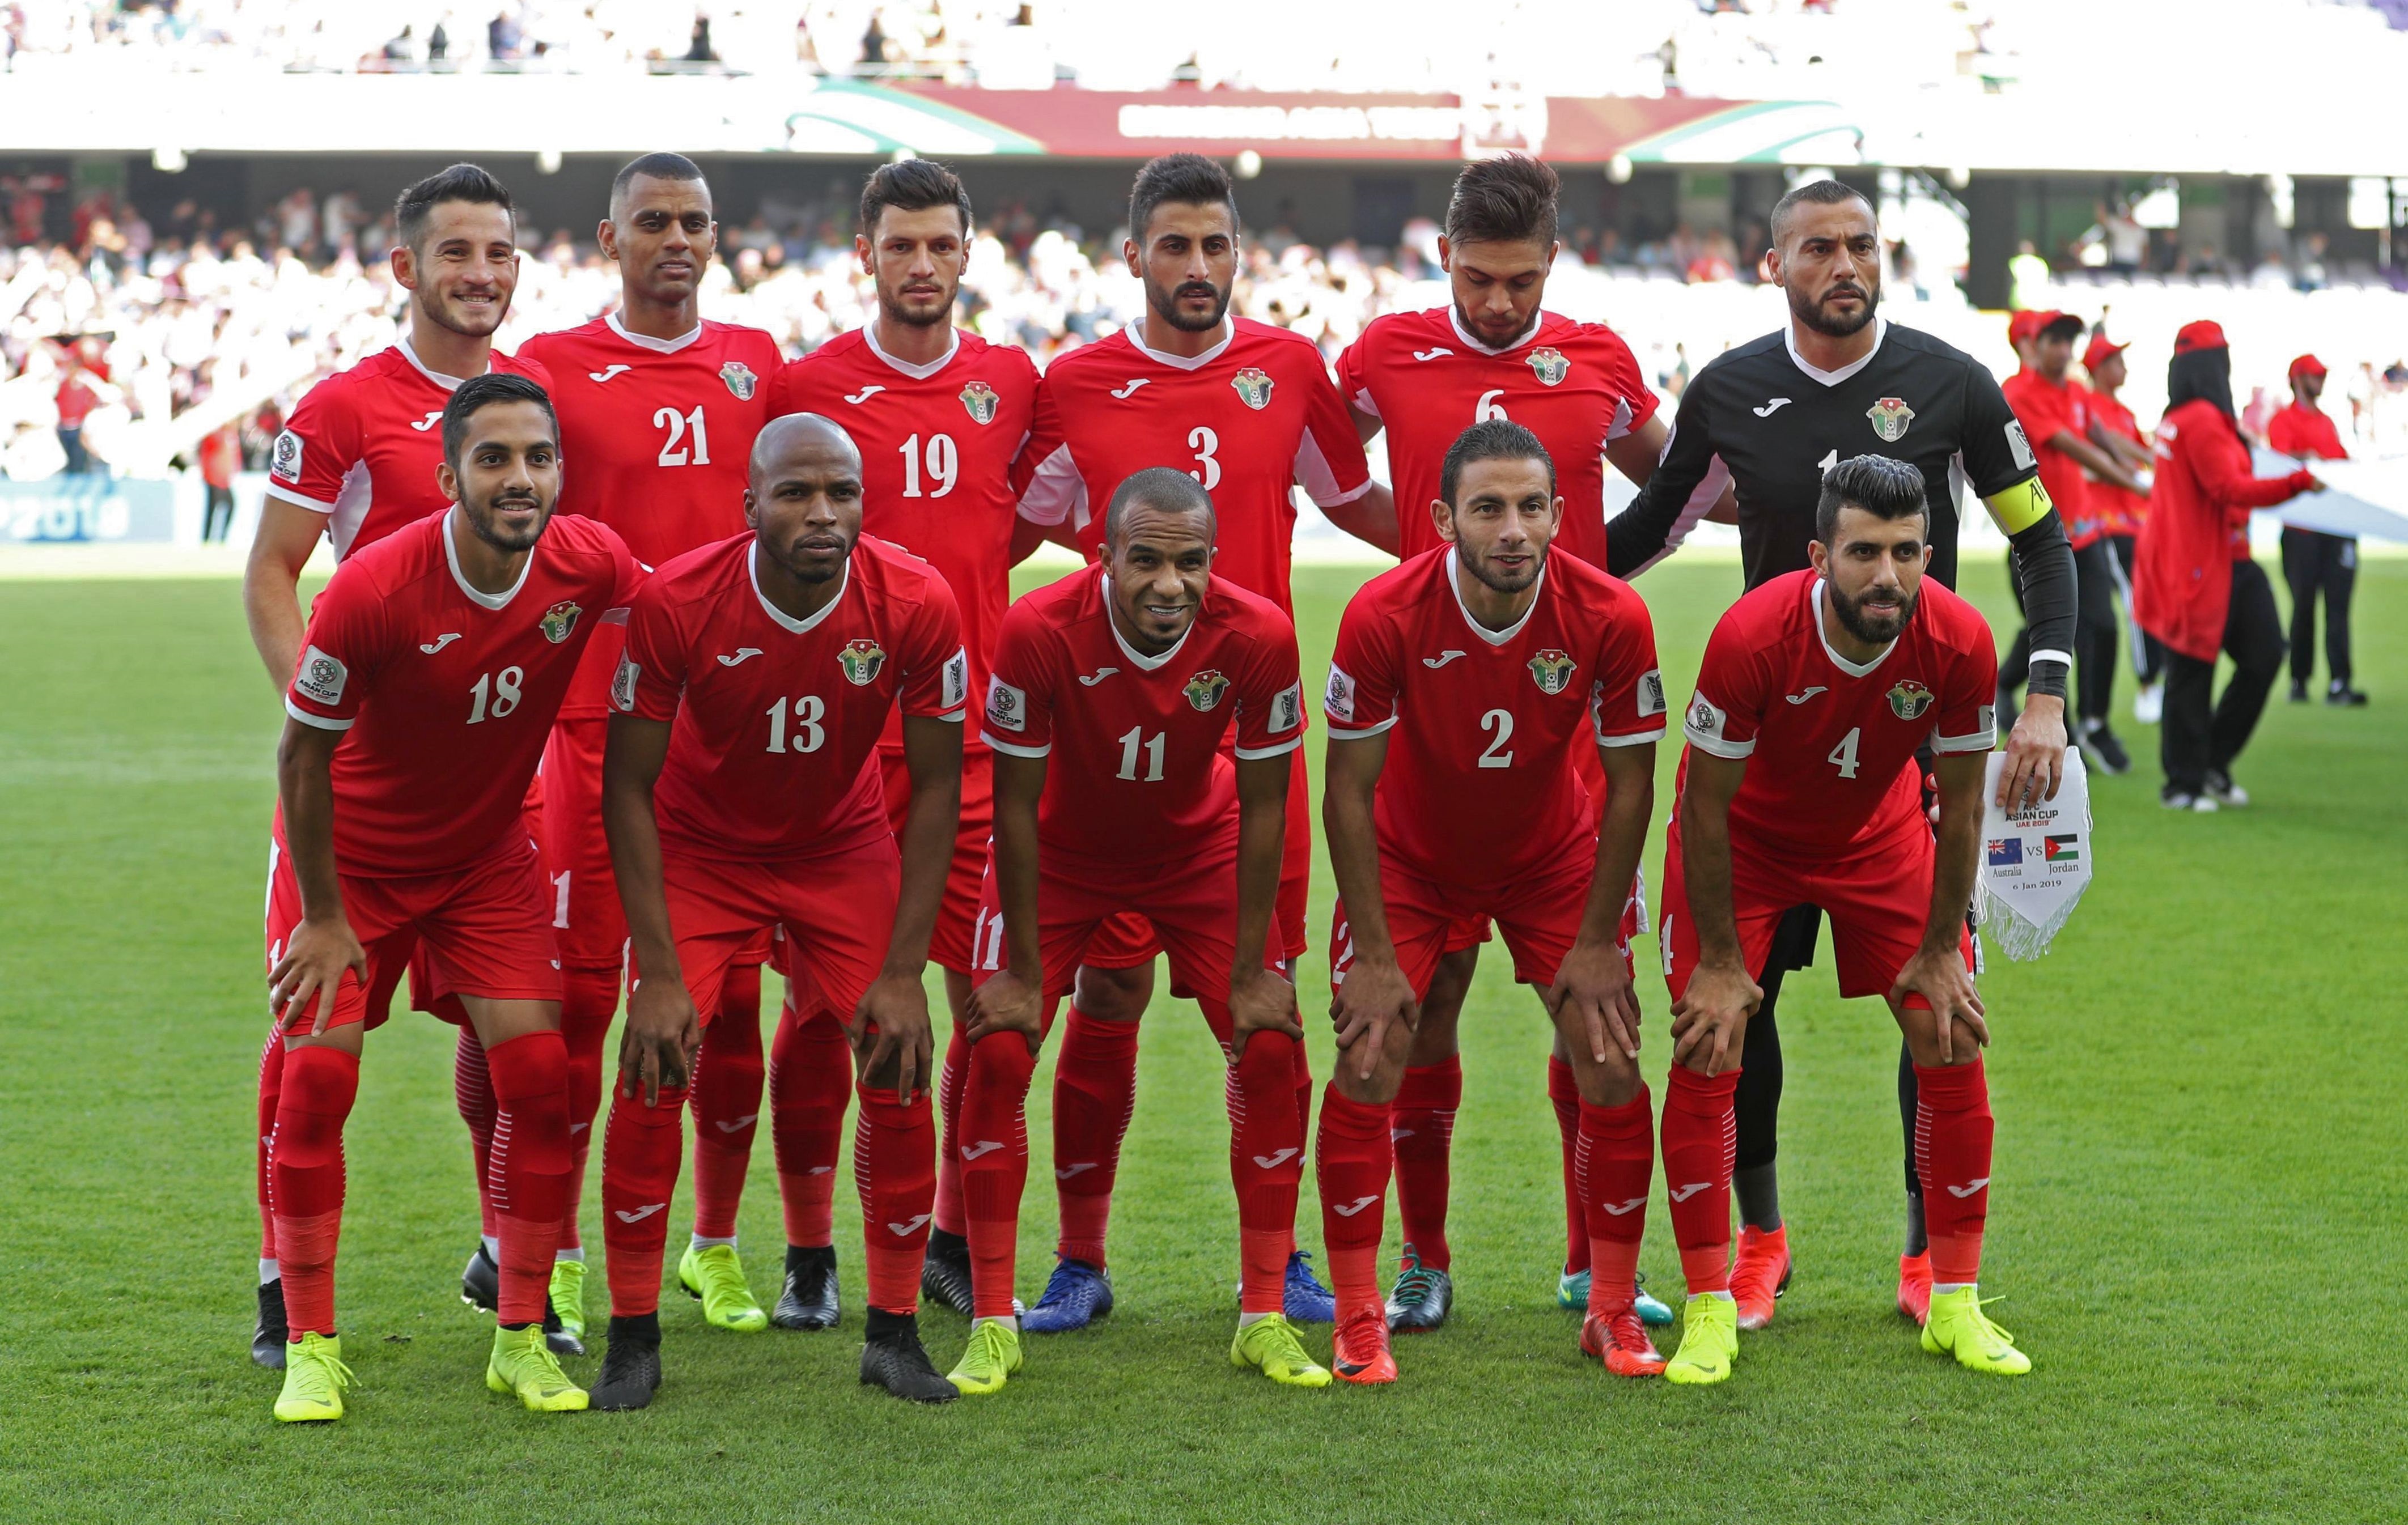 كأس آسيا 2019: الأردن للتأهل وسورية للتعويض – جريدة الغد